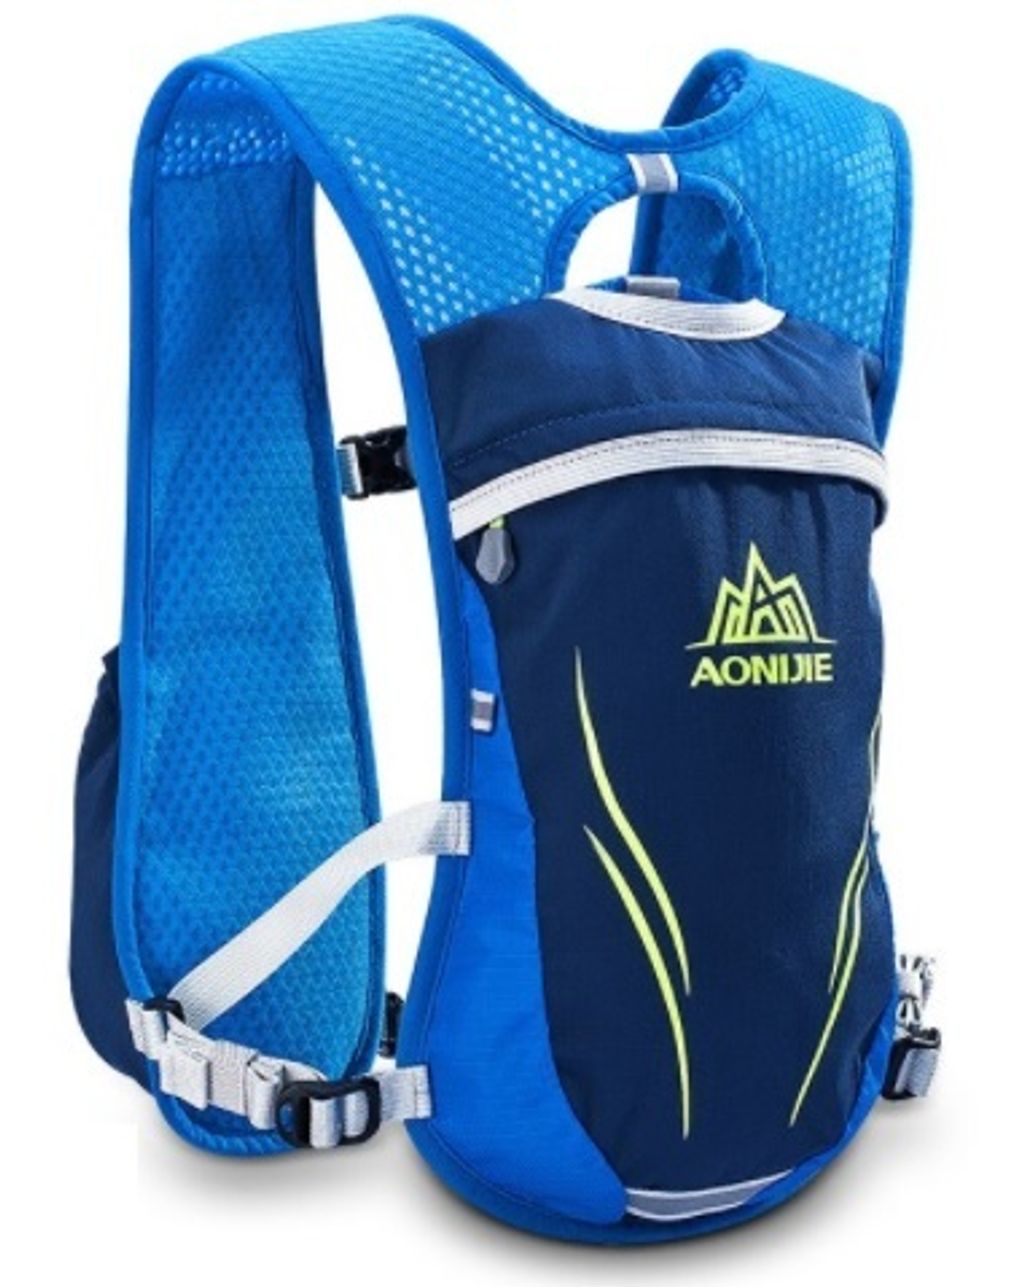 aonijie 5.5L e885 backpack blue.jpg